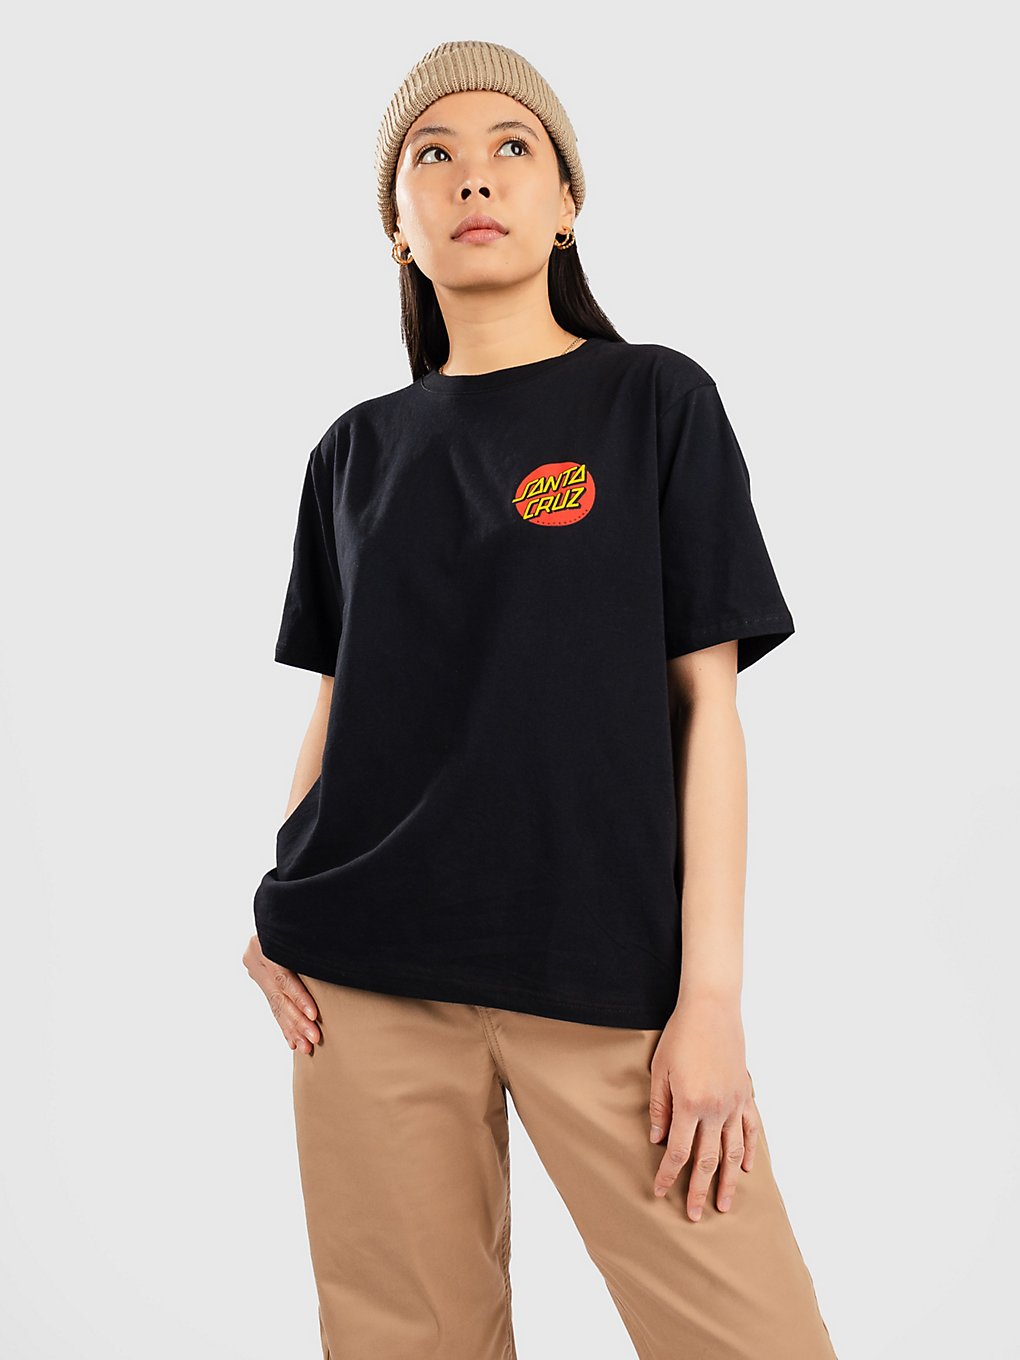 Santa Cruz Classic Dot Chest T-Shirt black kaufen